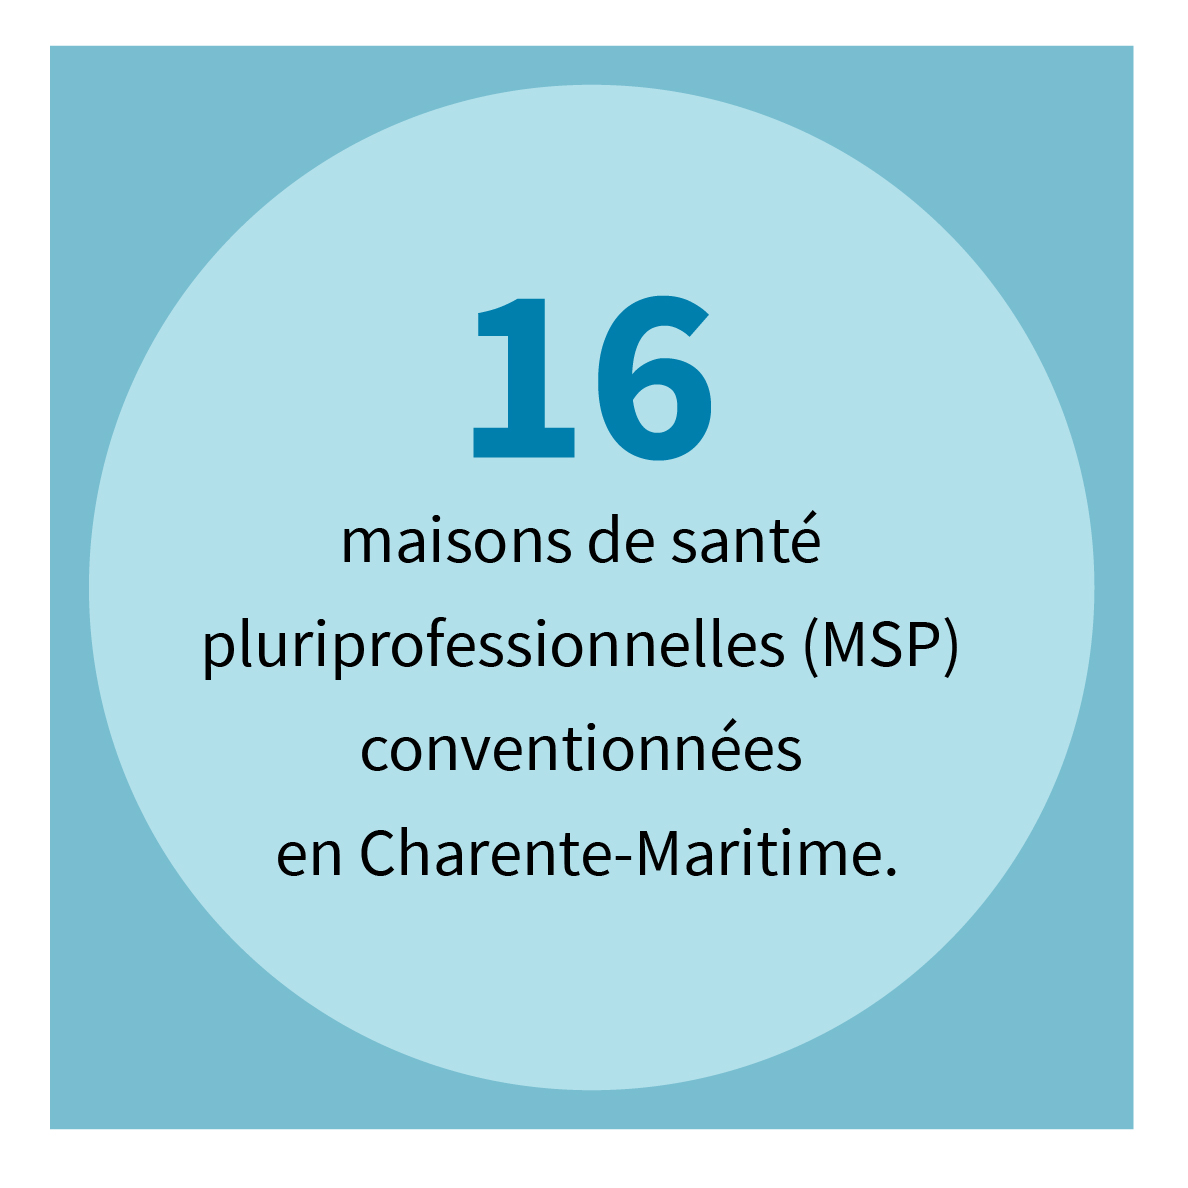 16 maisons de santé pluriprofessionnelles (MSP) conventionnées en Charente-Maritime.